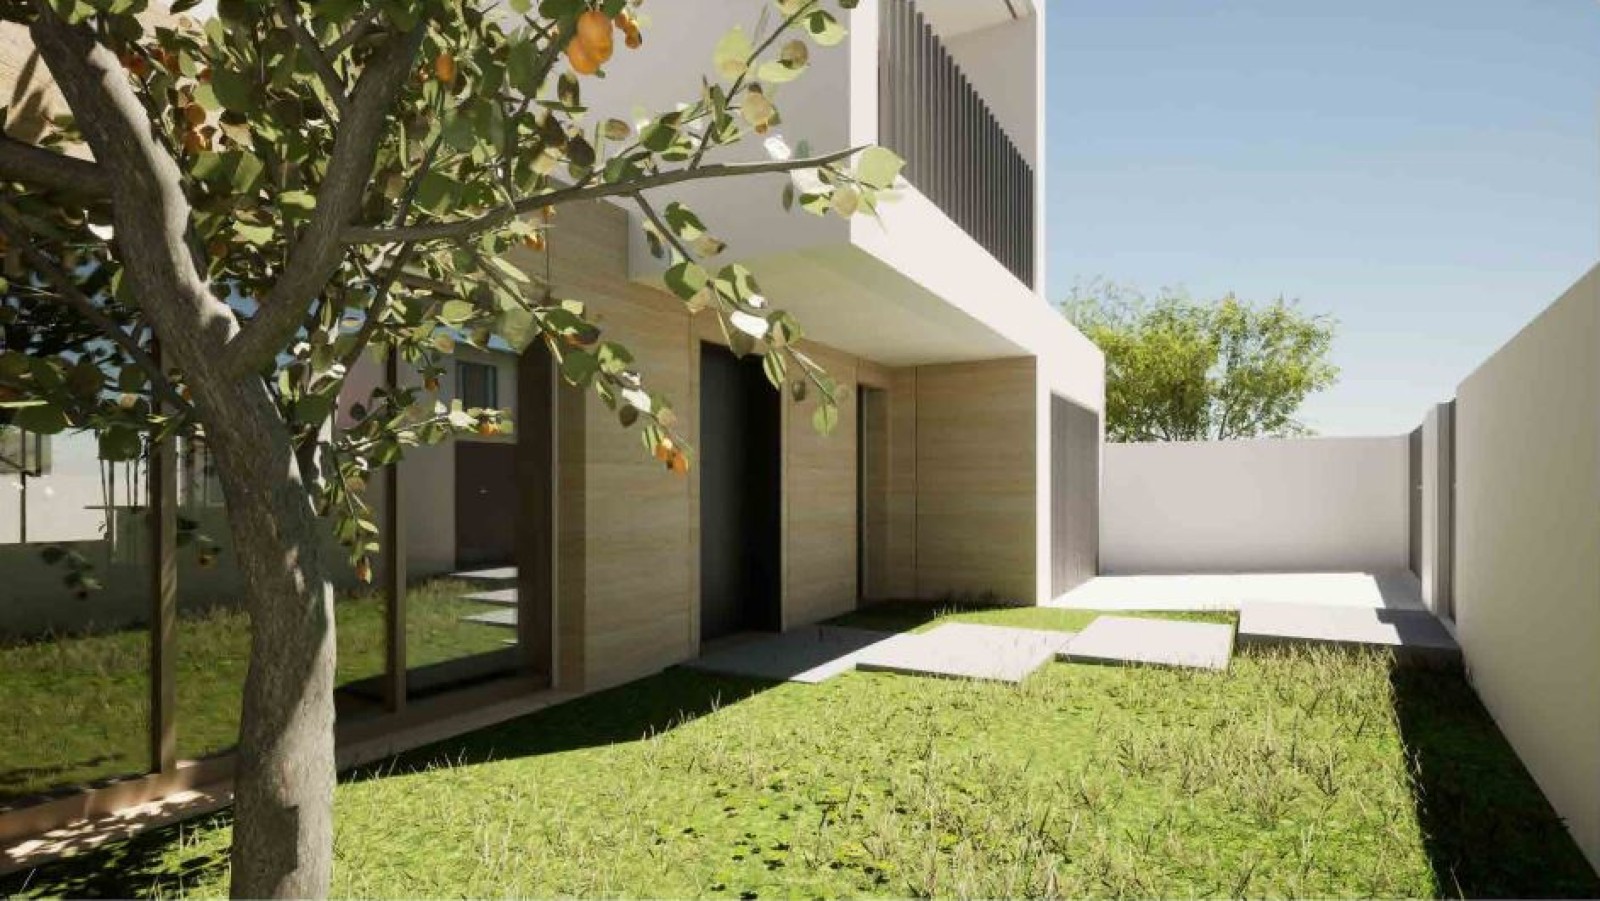 Villa mit 3 Schlafzimmern und Balkonen in Strandnähe, zu verkaufen, Gaia, Portugal_243395